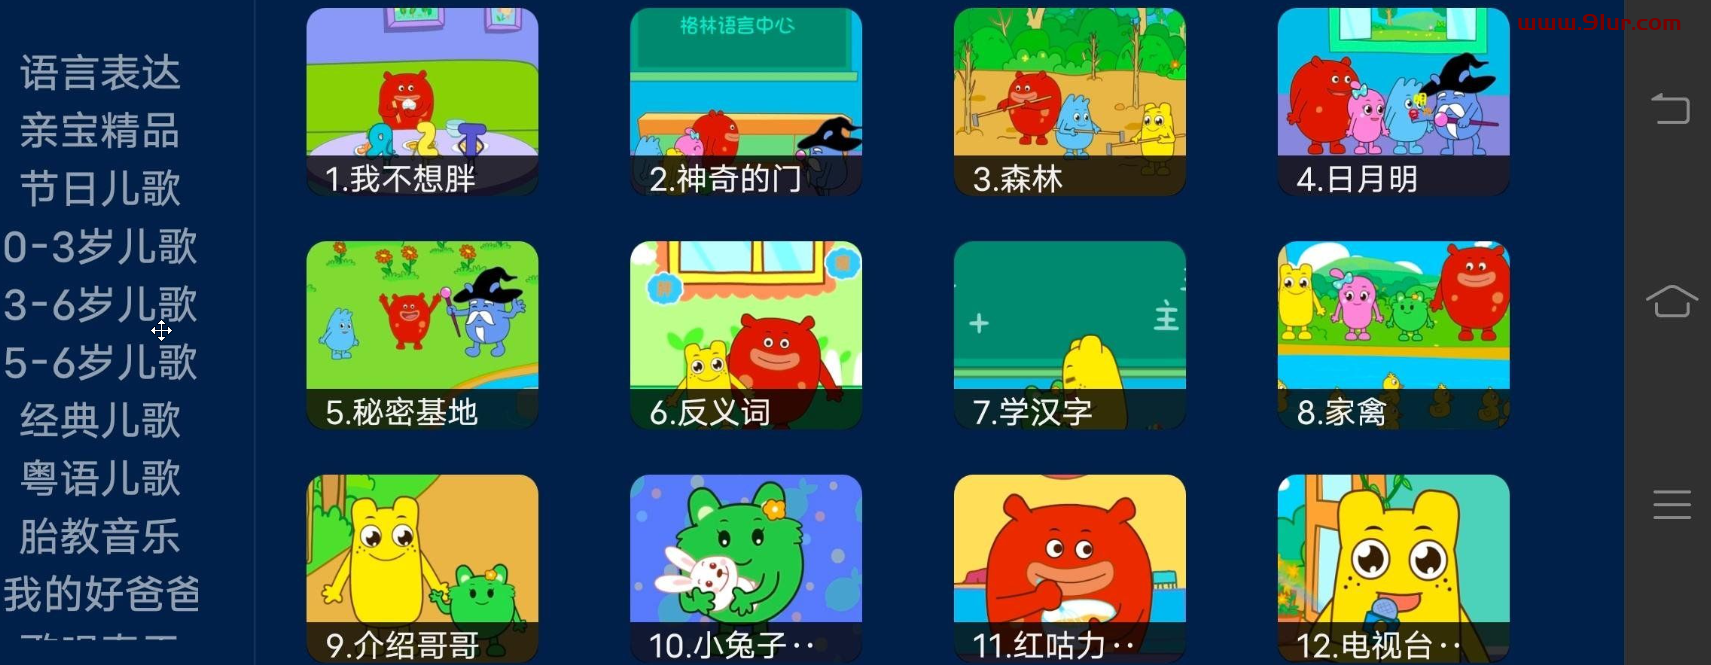 【亲宝儿歌】TV+安卓 v3.3.2 无需登入无广告无会员